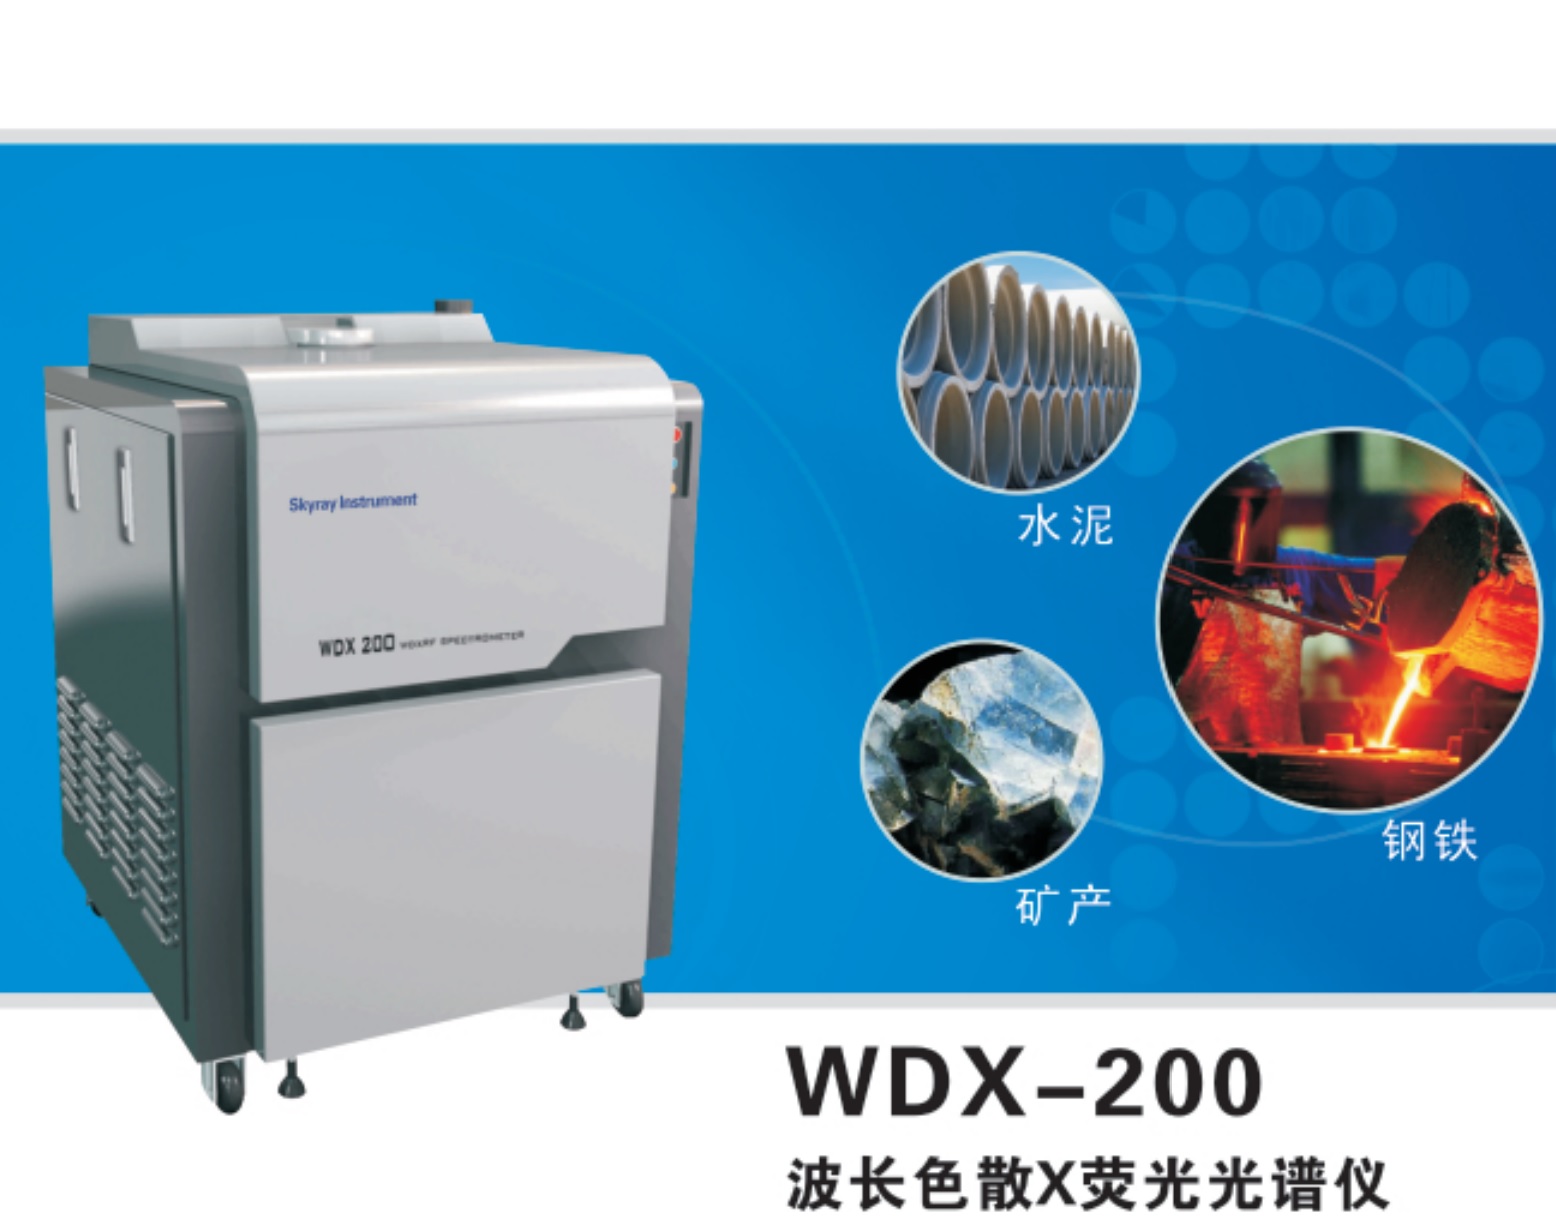 江蘇天瑞儀器股份有限公司-天瑞儀器WDX200